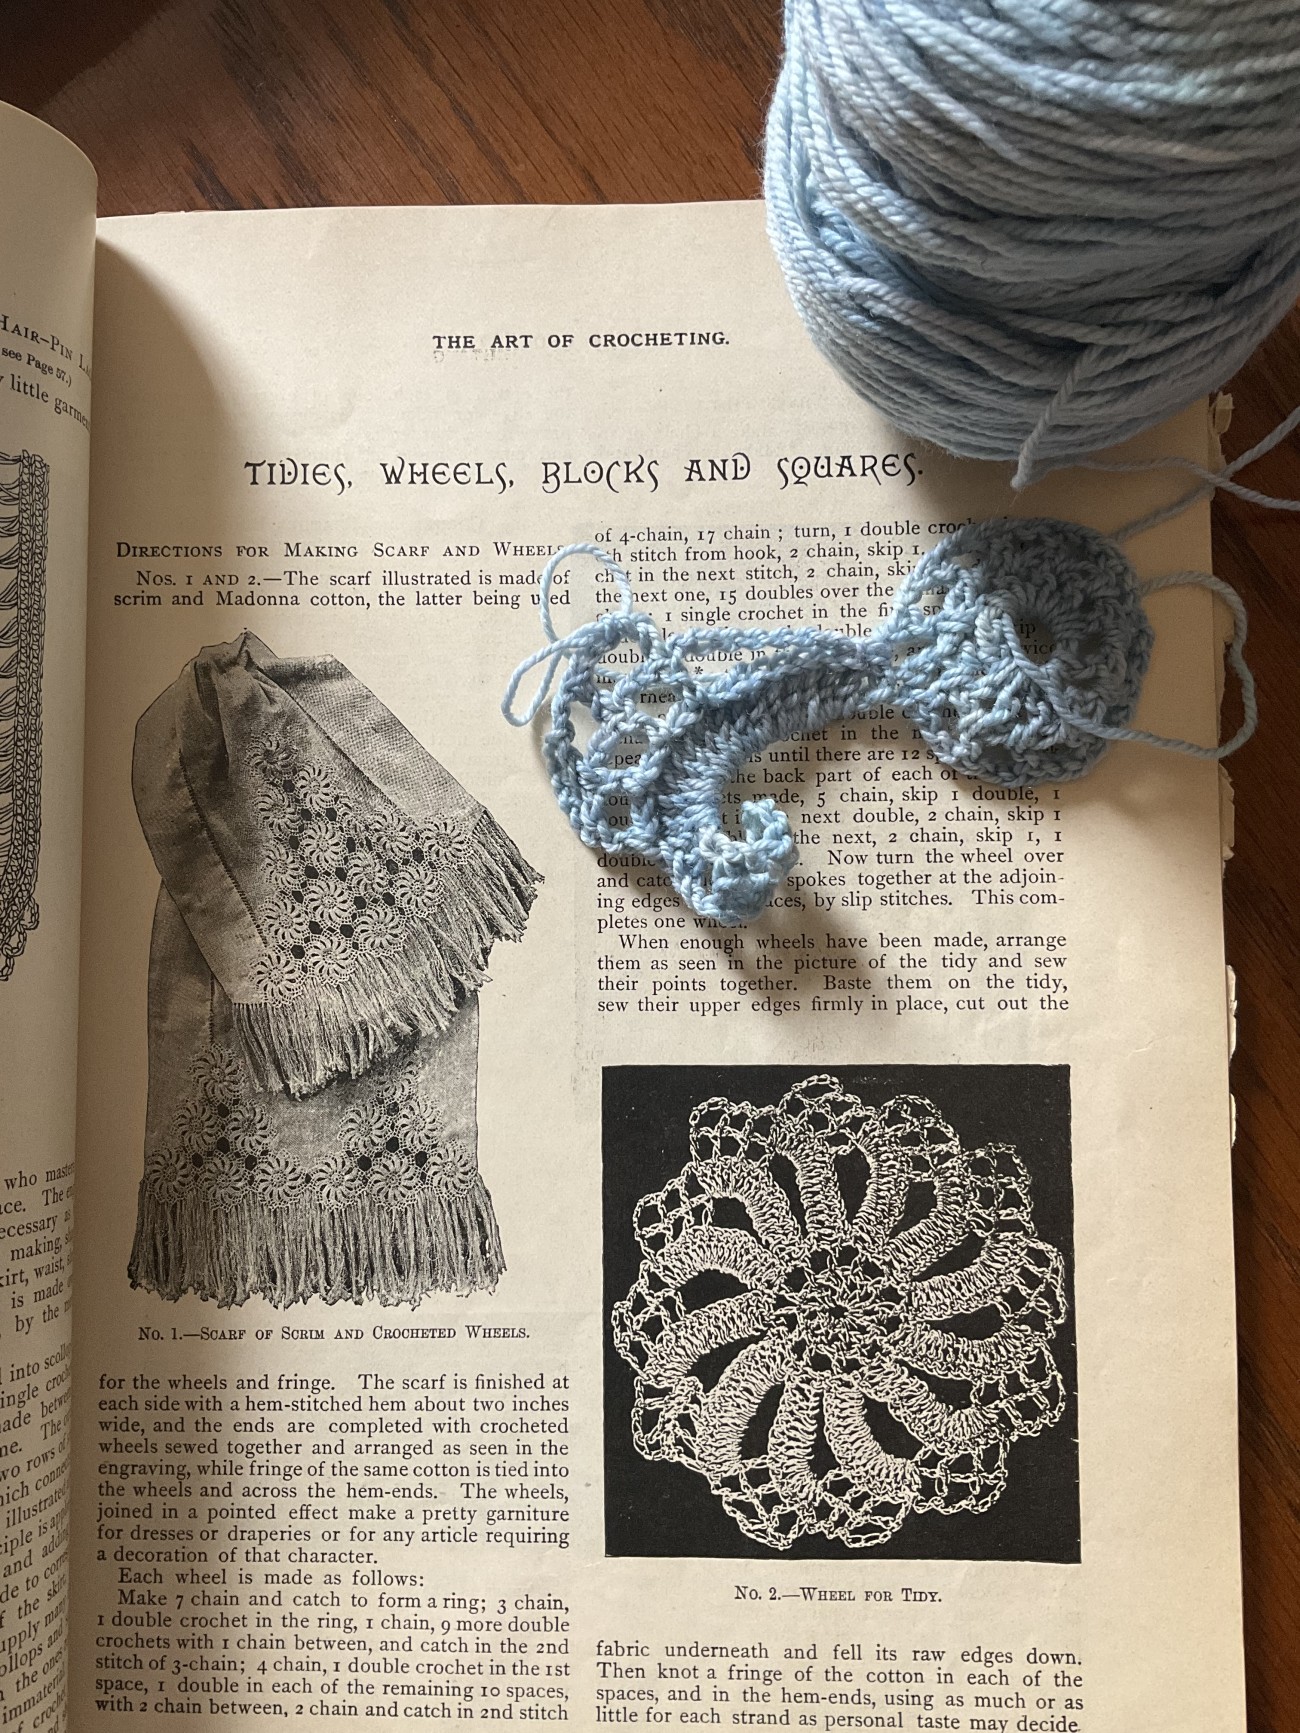 The art of crochet in progress